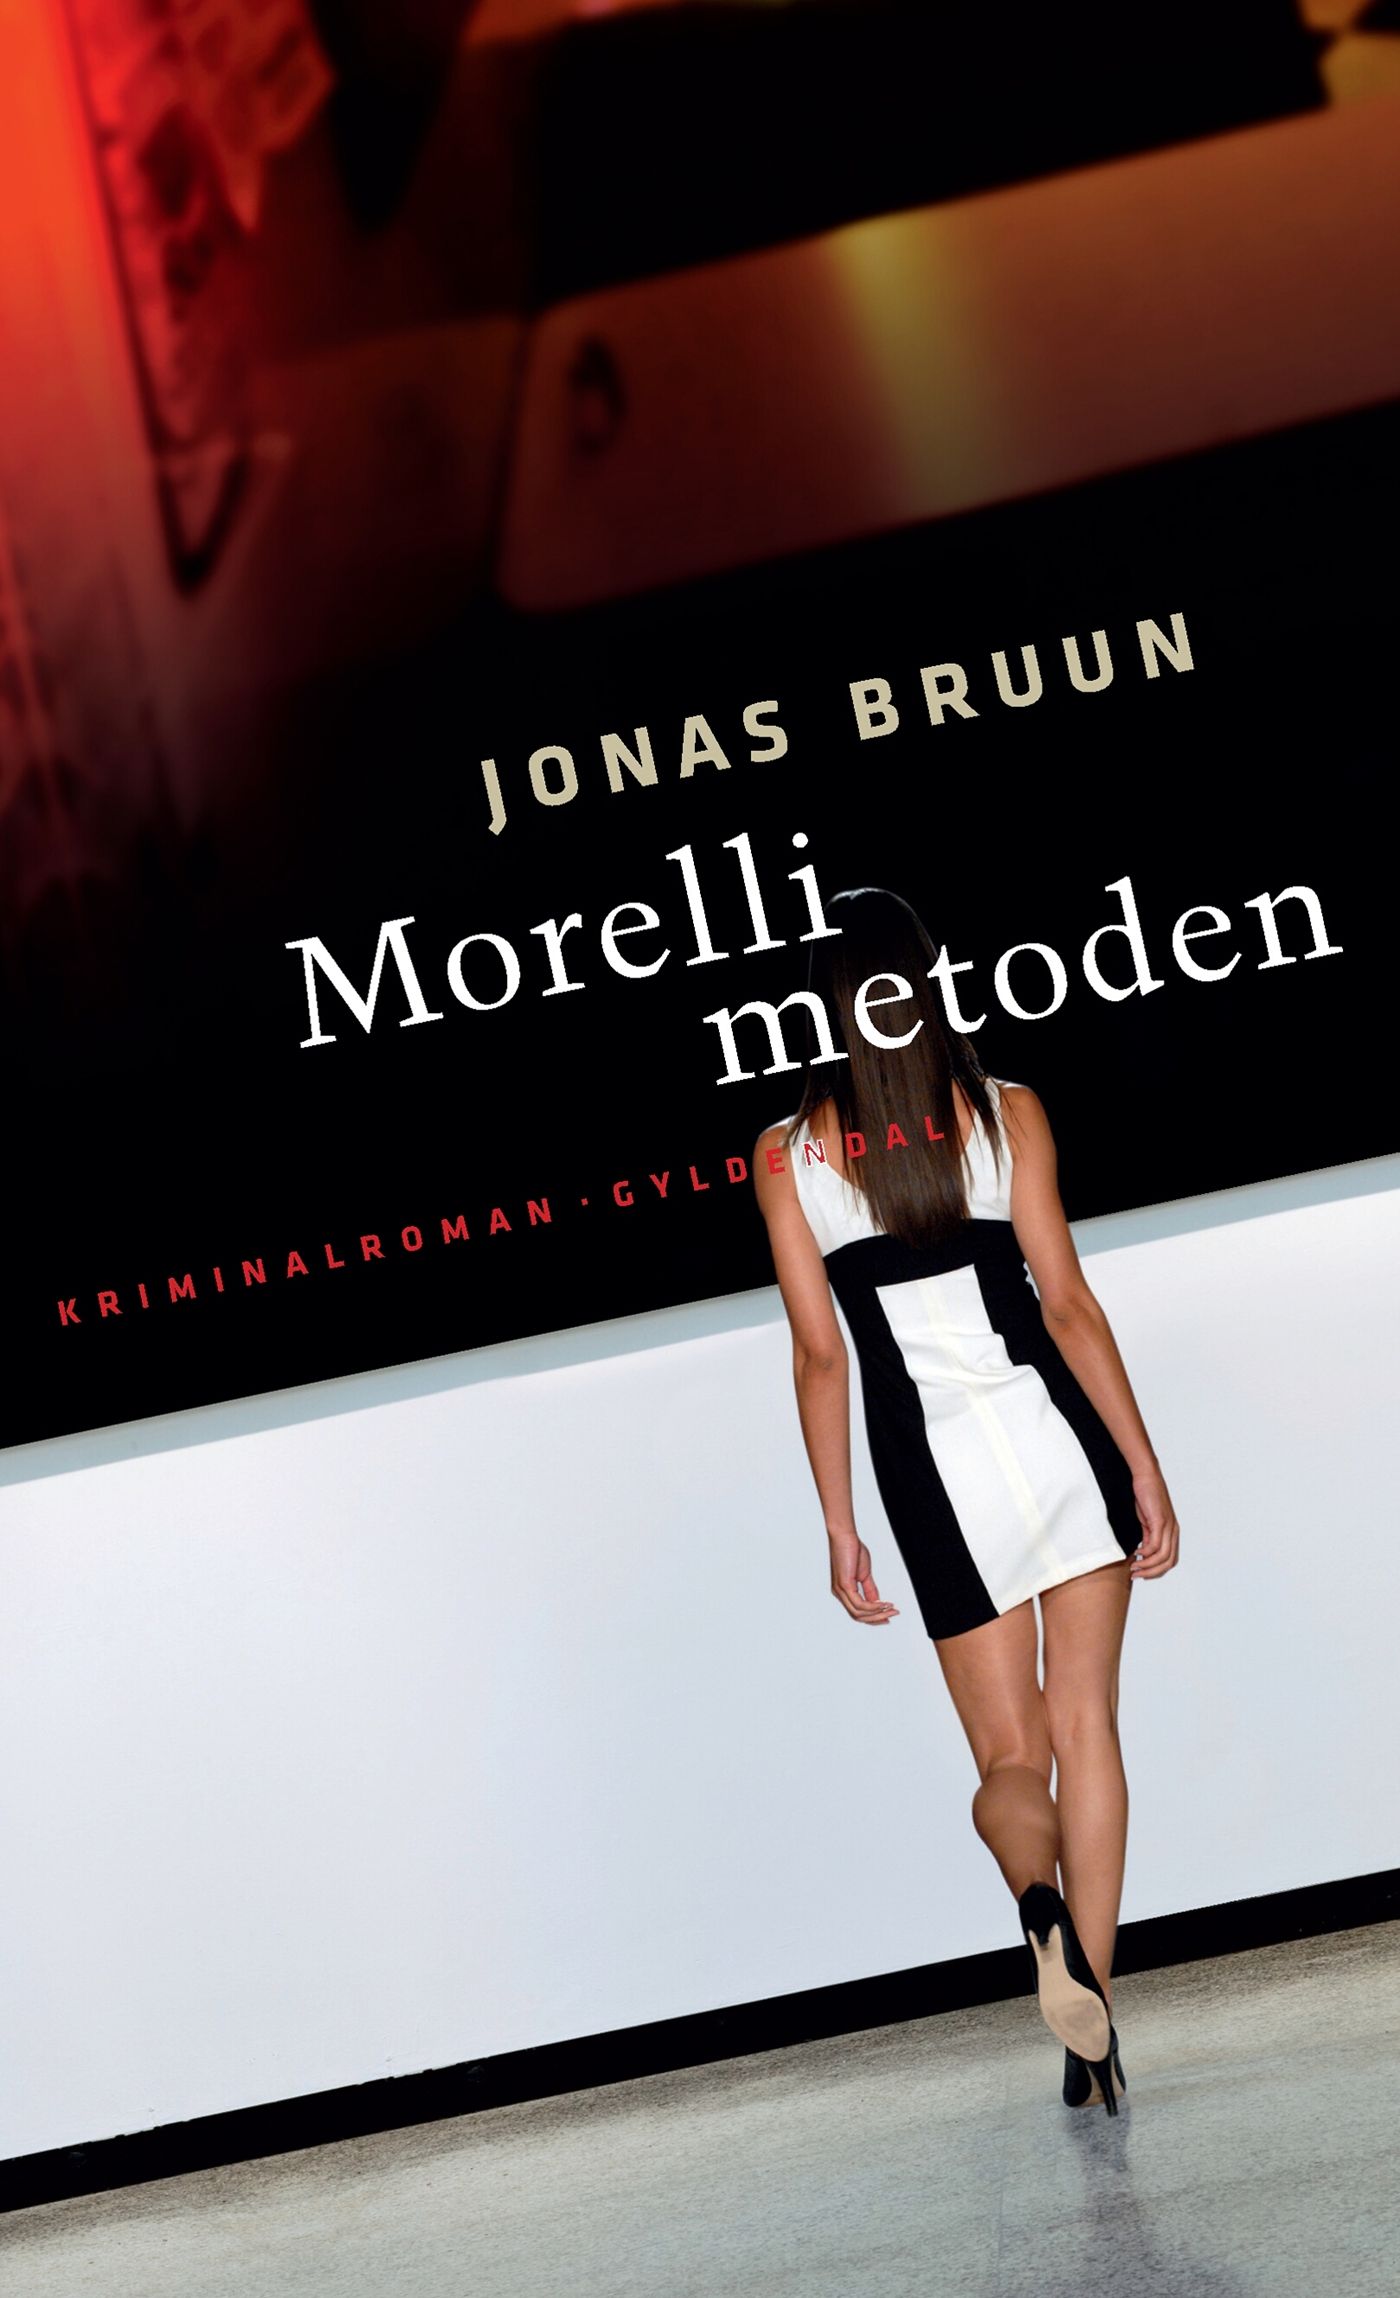 Morelli-metoden, eBook by Jonas Bruun